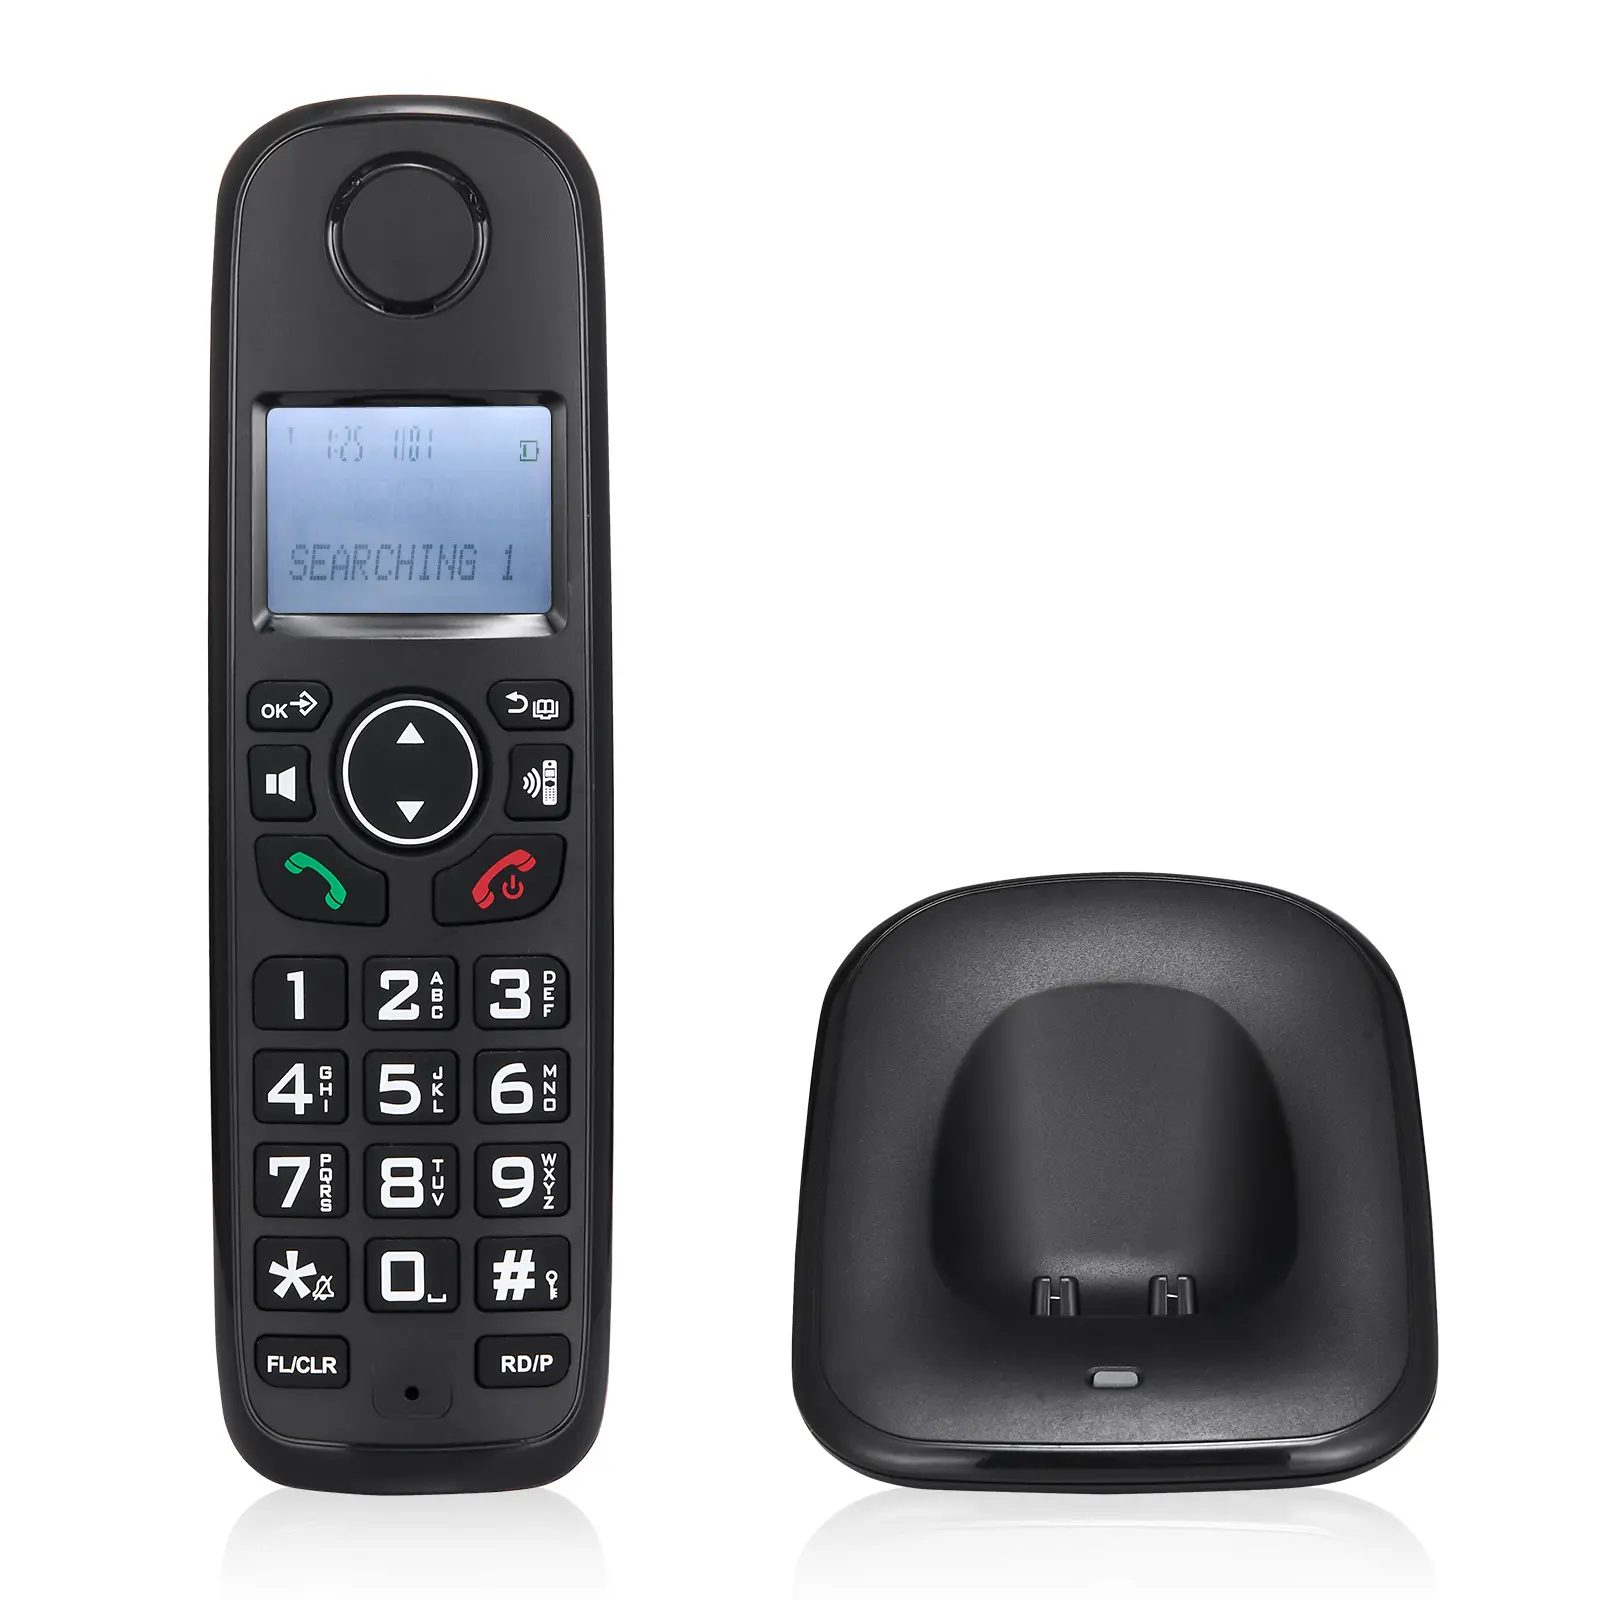 DECT6.0 Sistem Telepon Tanpa Kabel, Dapat Diperpanjang dengan 3 GARIS Telepon ID Pemanggil untuk Kantor Mendukung 5 Handset Landline Telefono